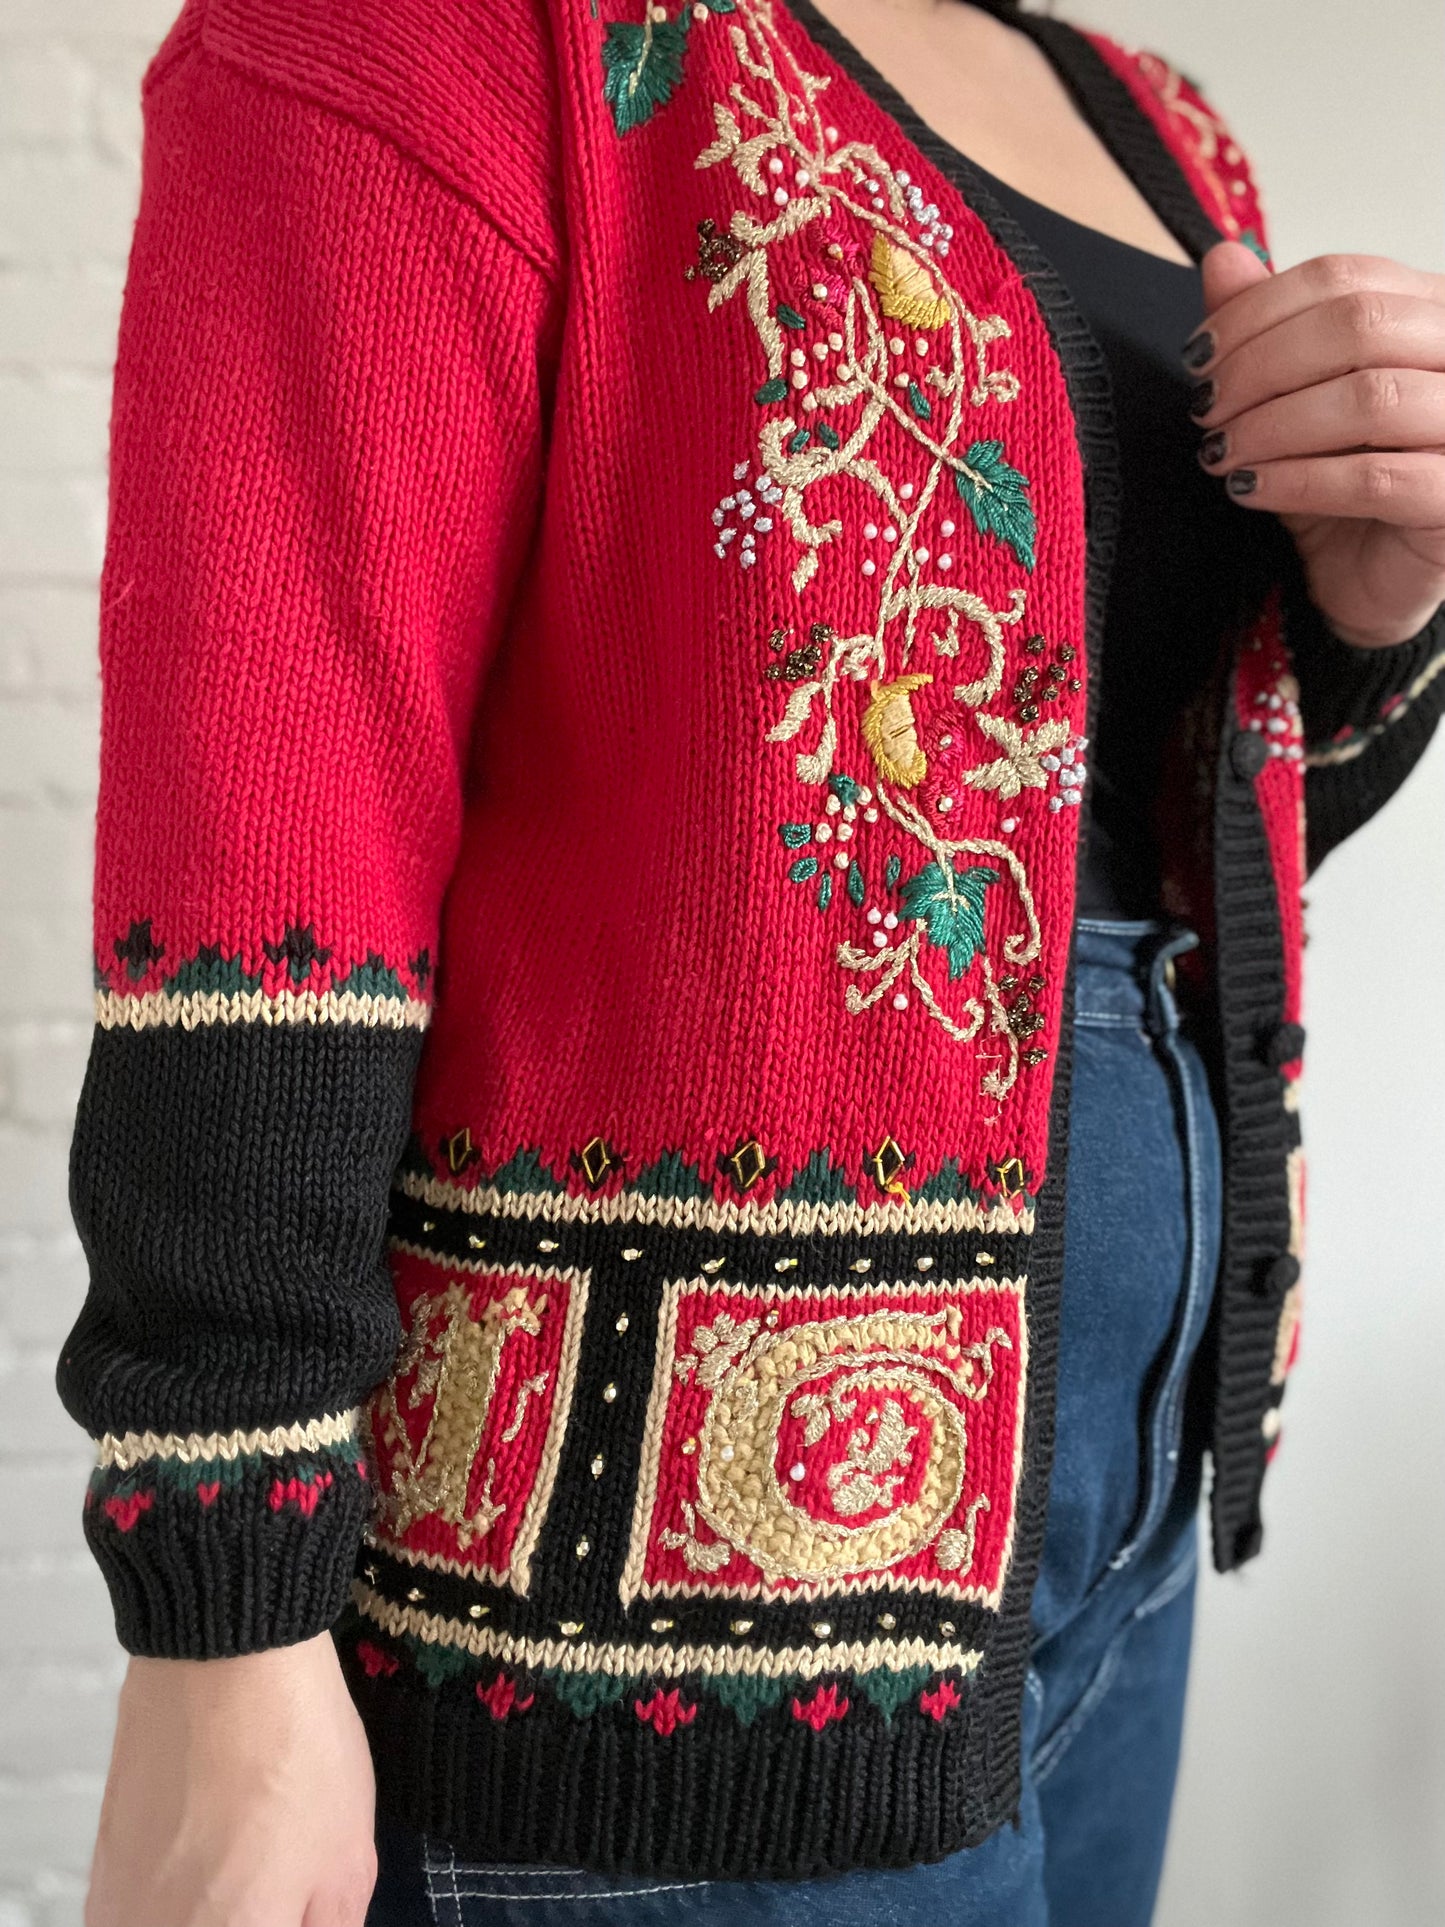 Striking Noel Knit Sweater - L